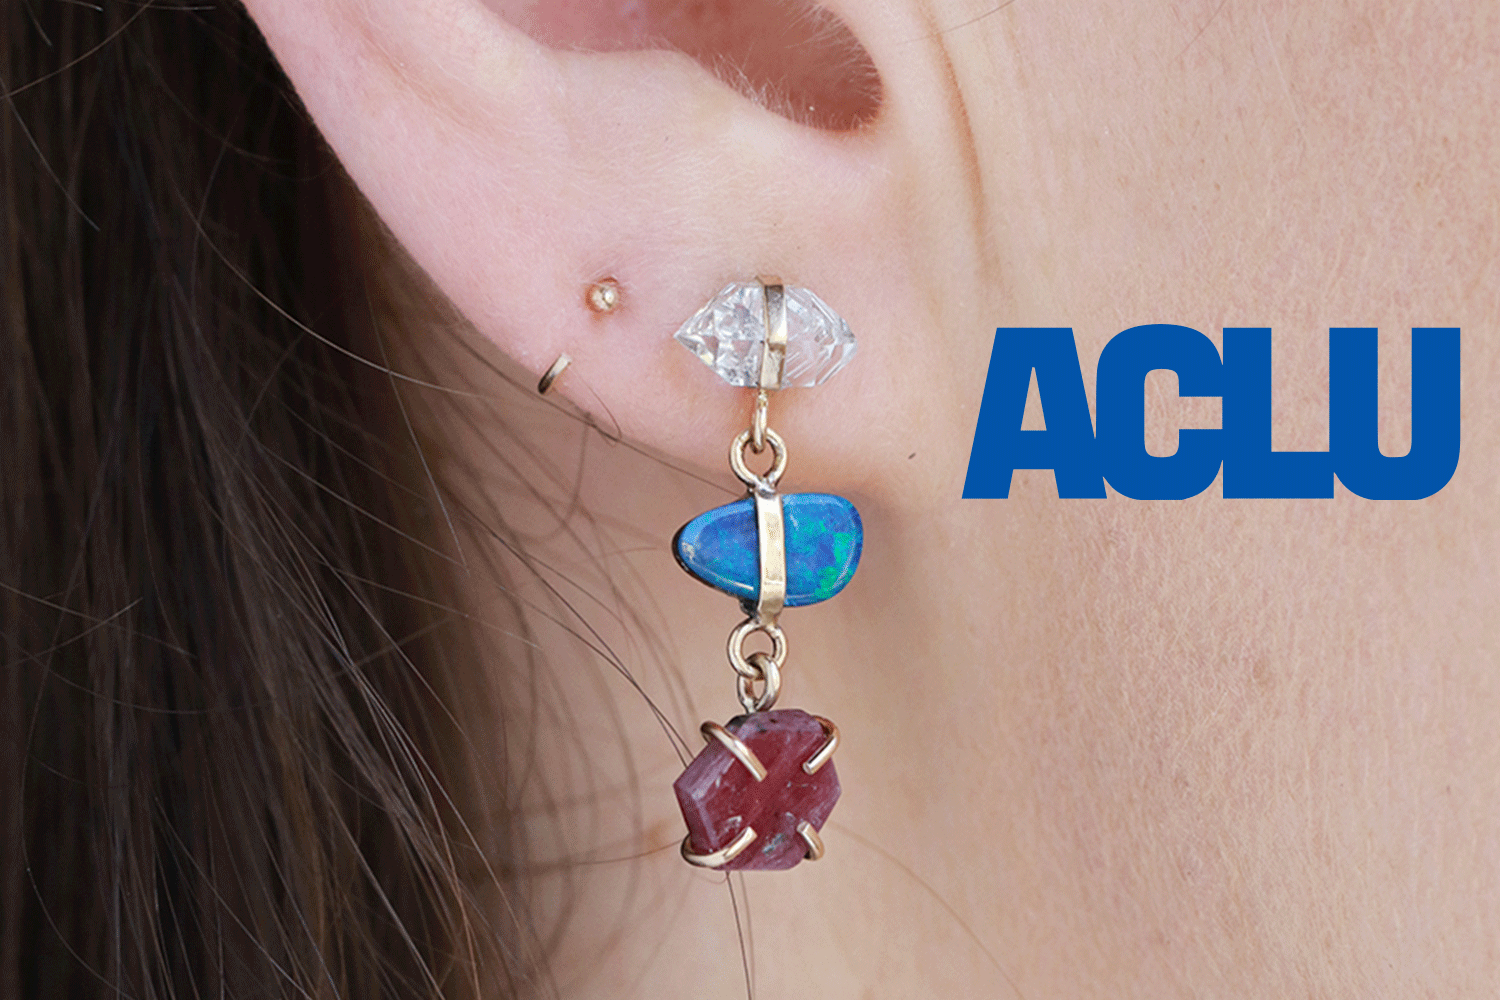 aclu logo and earrings